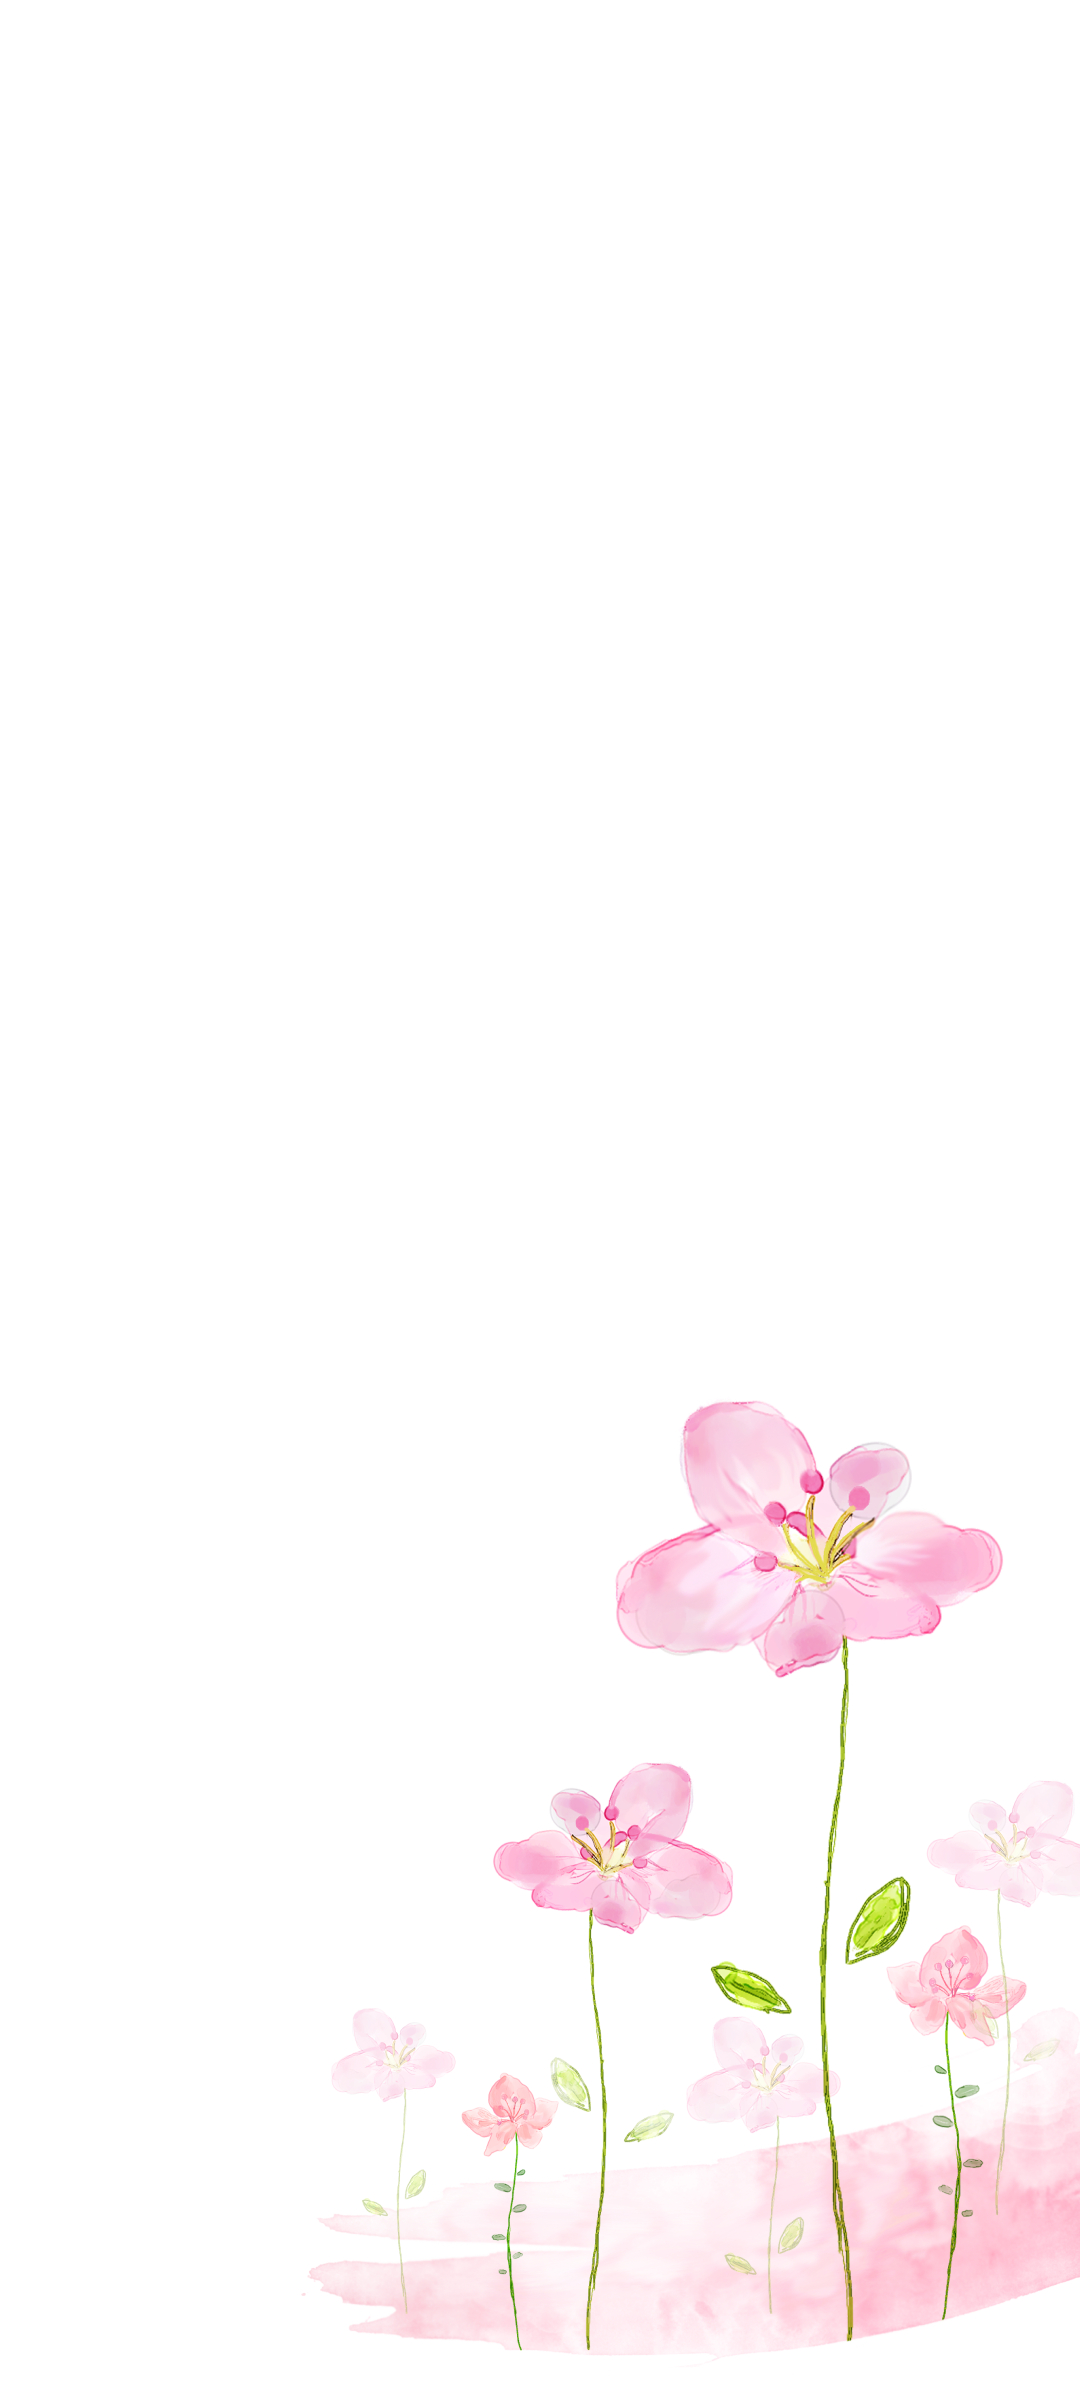 水彩で描かれた綺麗な花のイラスト Galaxy 1 壁紙 待ち受け Sumaran